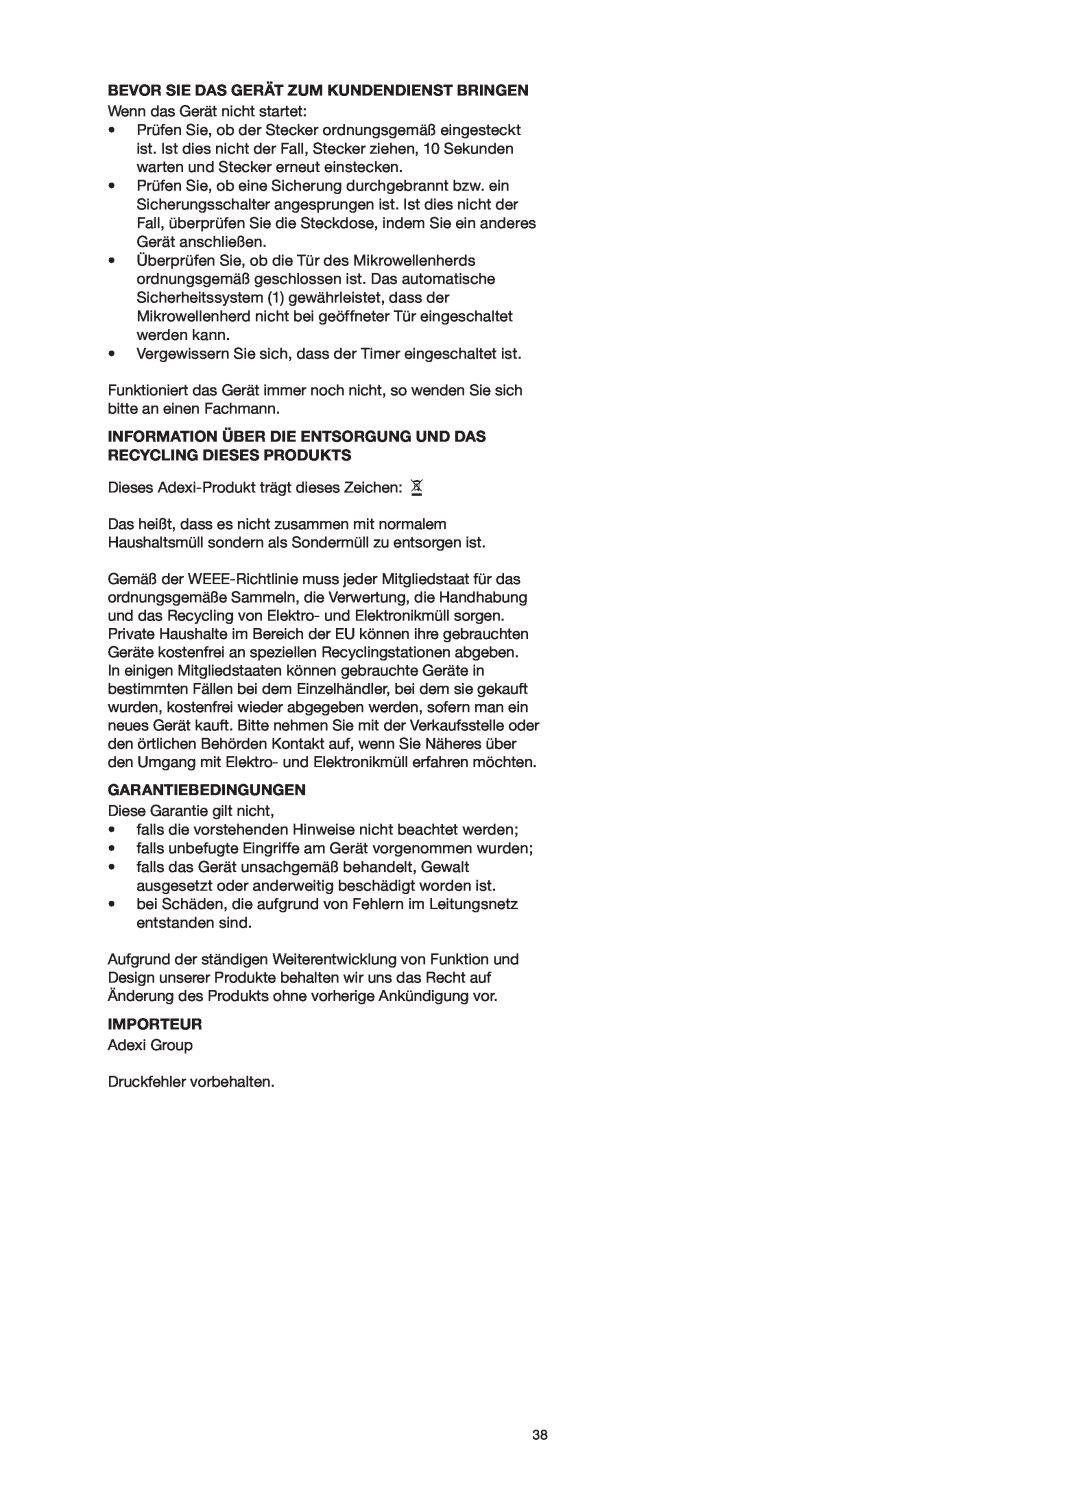 Melissa 253-013 manual Bevor Sie Das Gerät Zum Kundendienst Bringen, Garantiebedingungen, Importeur 